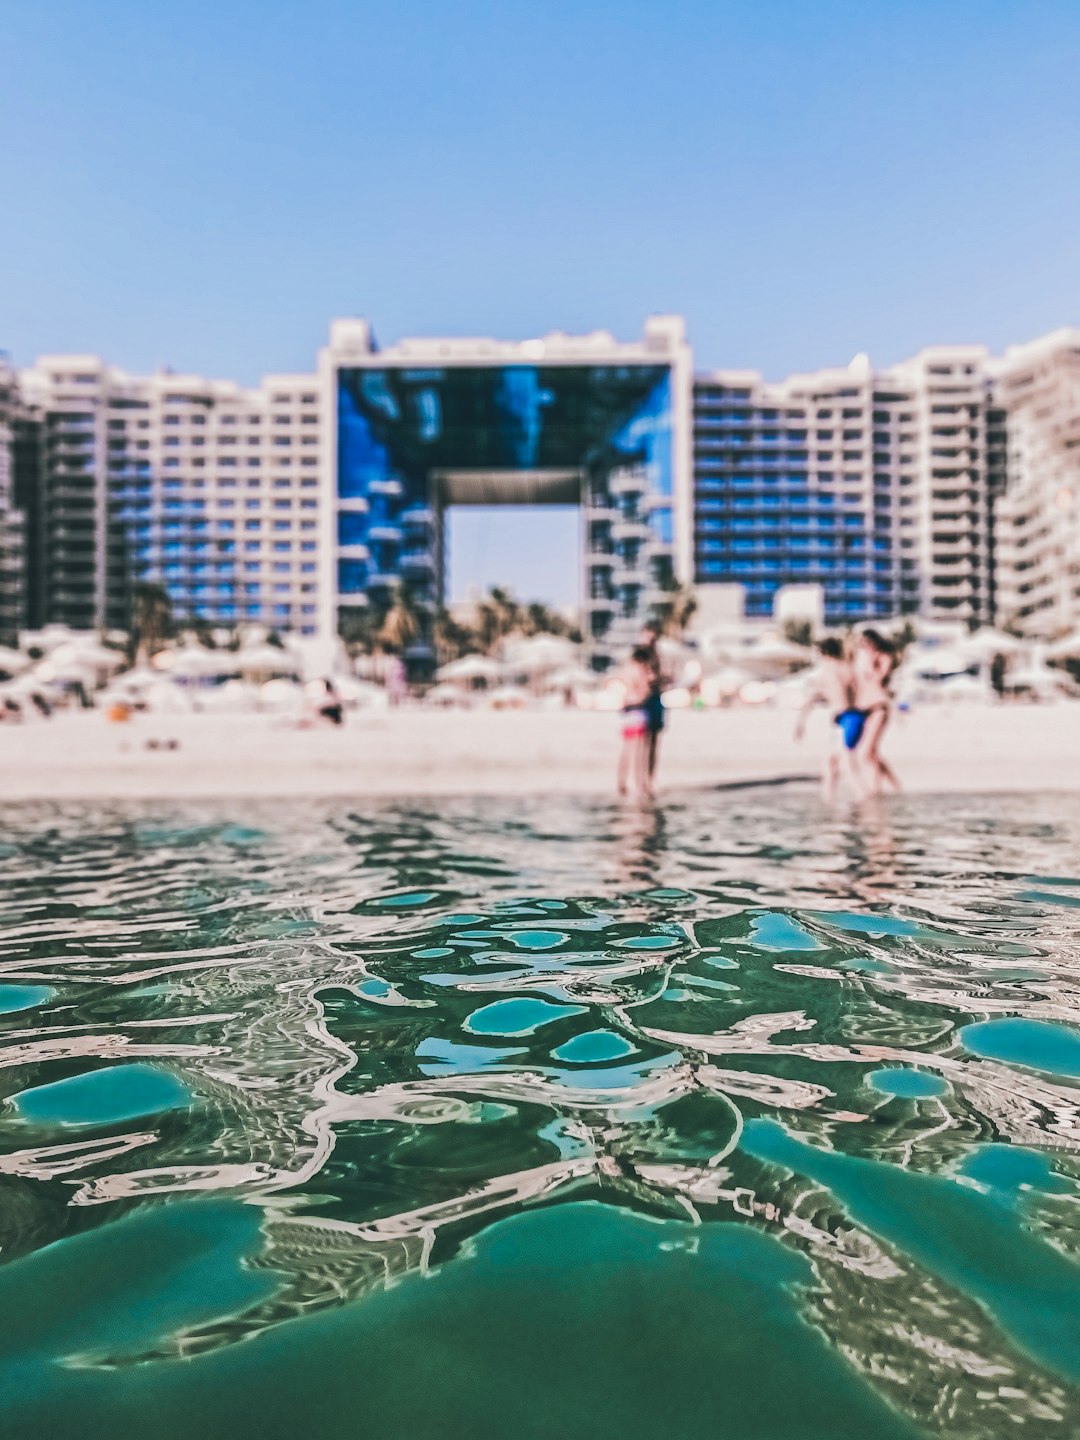 Resort photo spot Dubai Marina - Dubai - United Arab Emirates Sharjah Desert Park